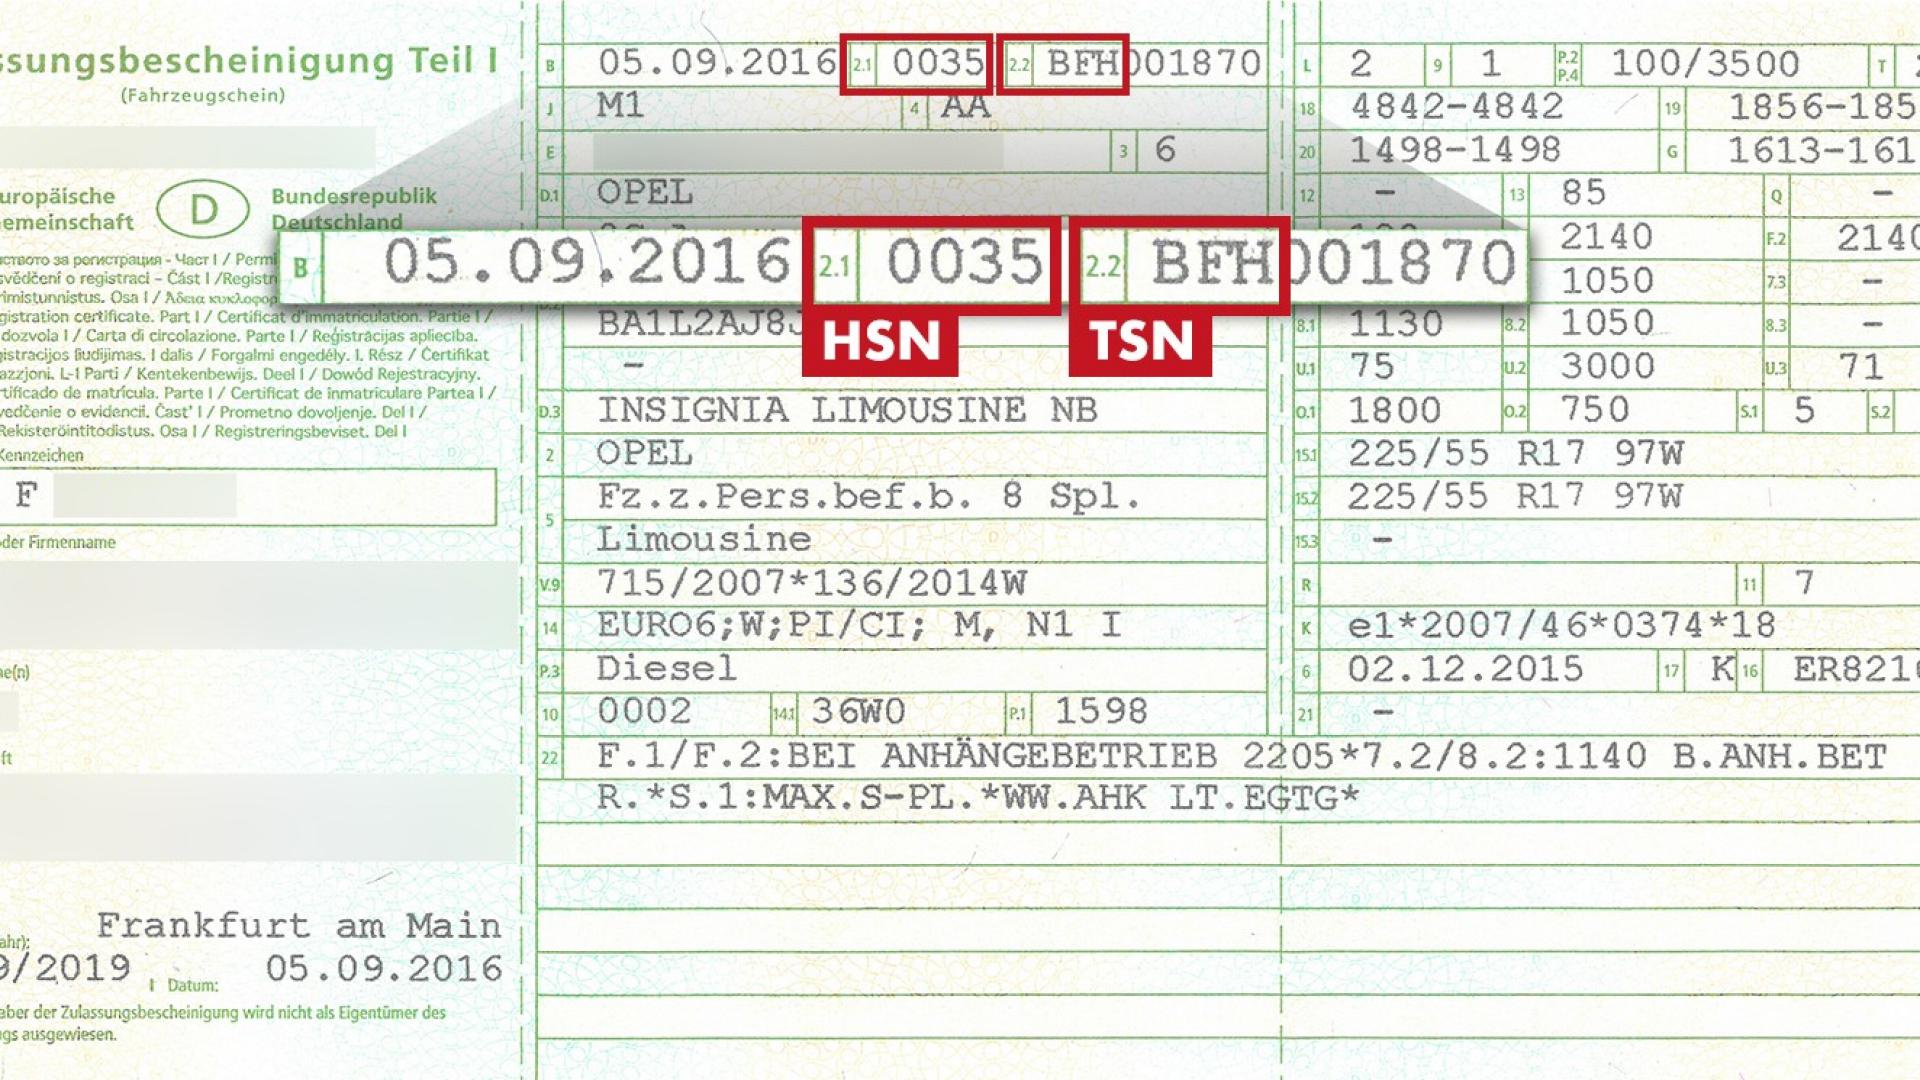 Auf dem Bild ist ein Fahrzeugschein mit Herstellerschlüsselnummer (HSN) und Tüpschlüsselnummer (TSN)zu sehen